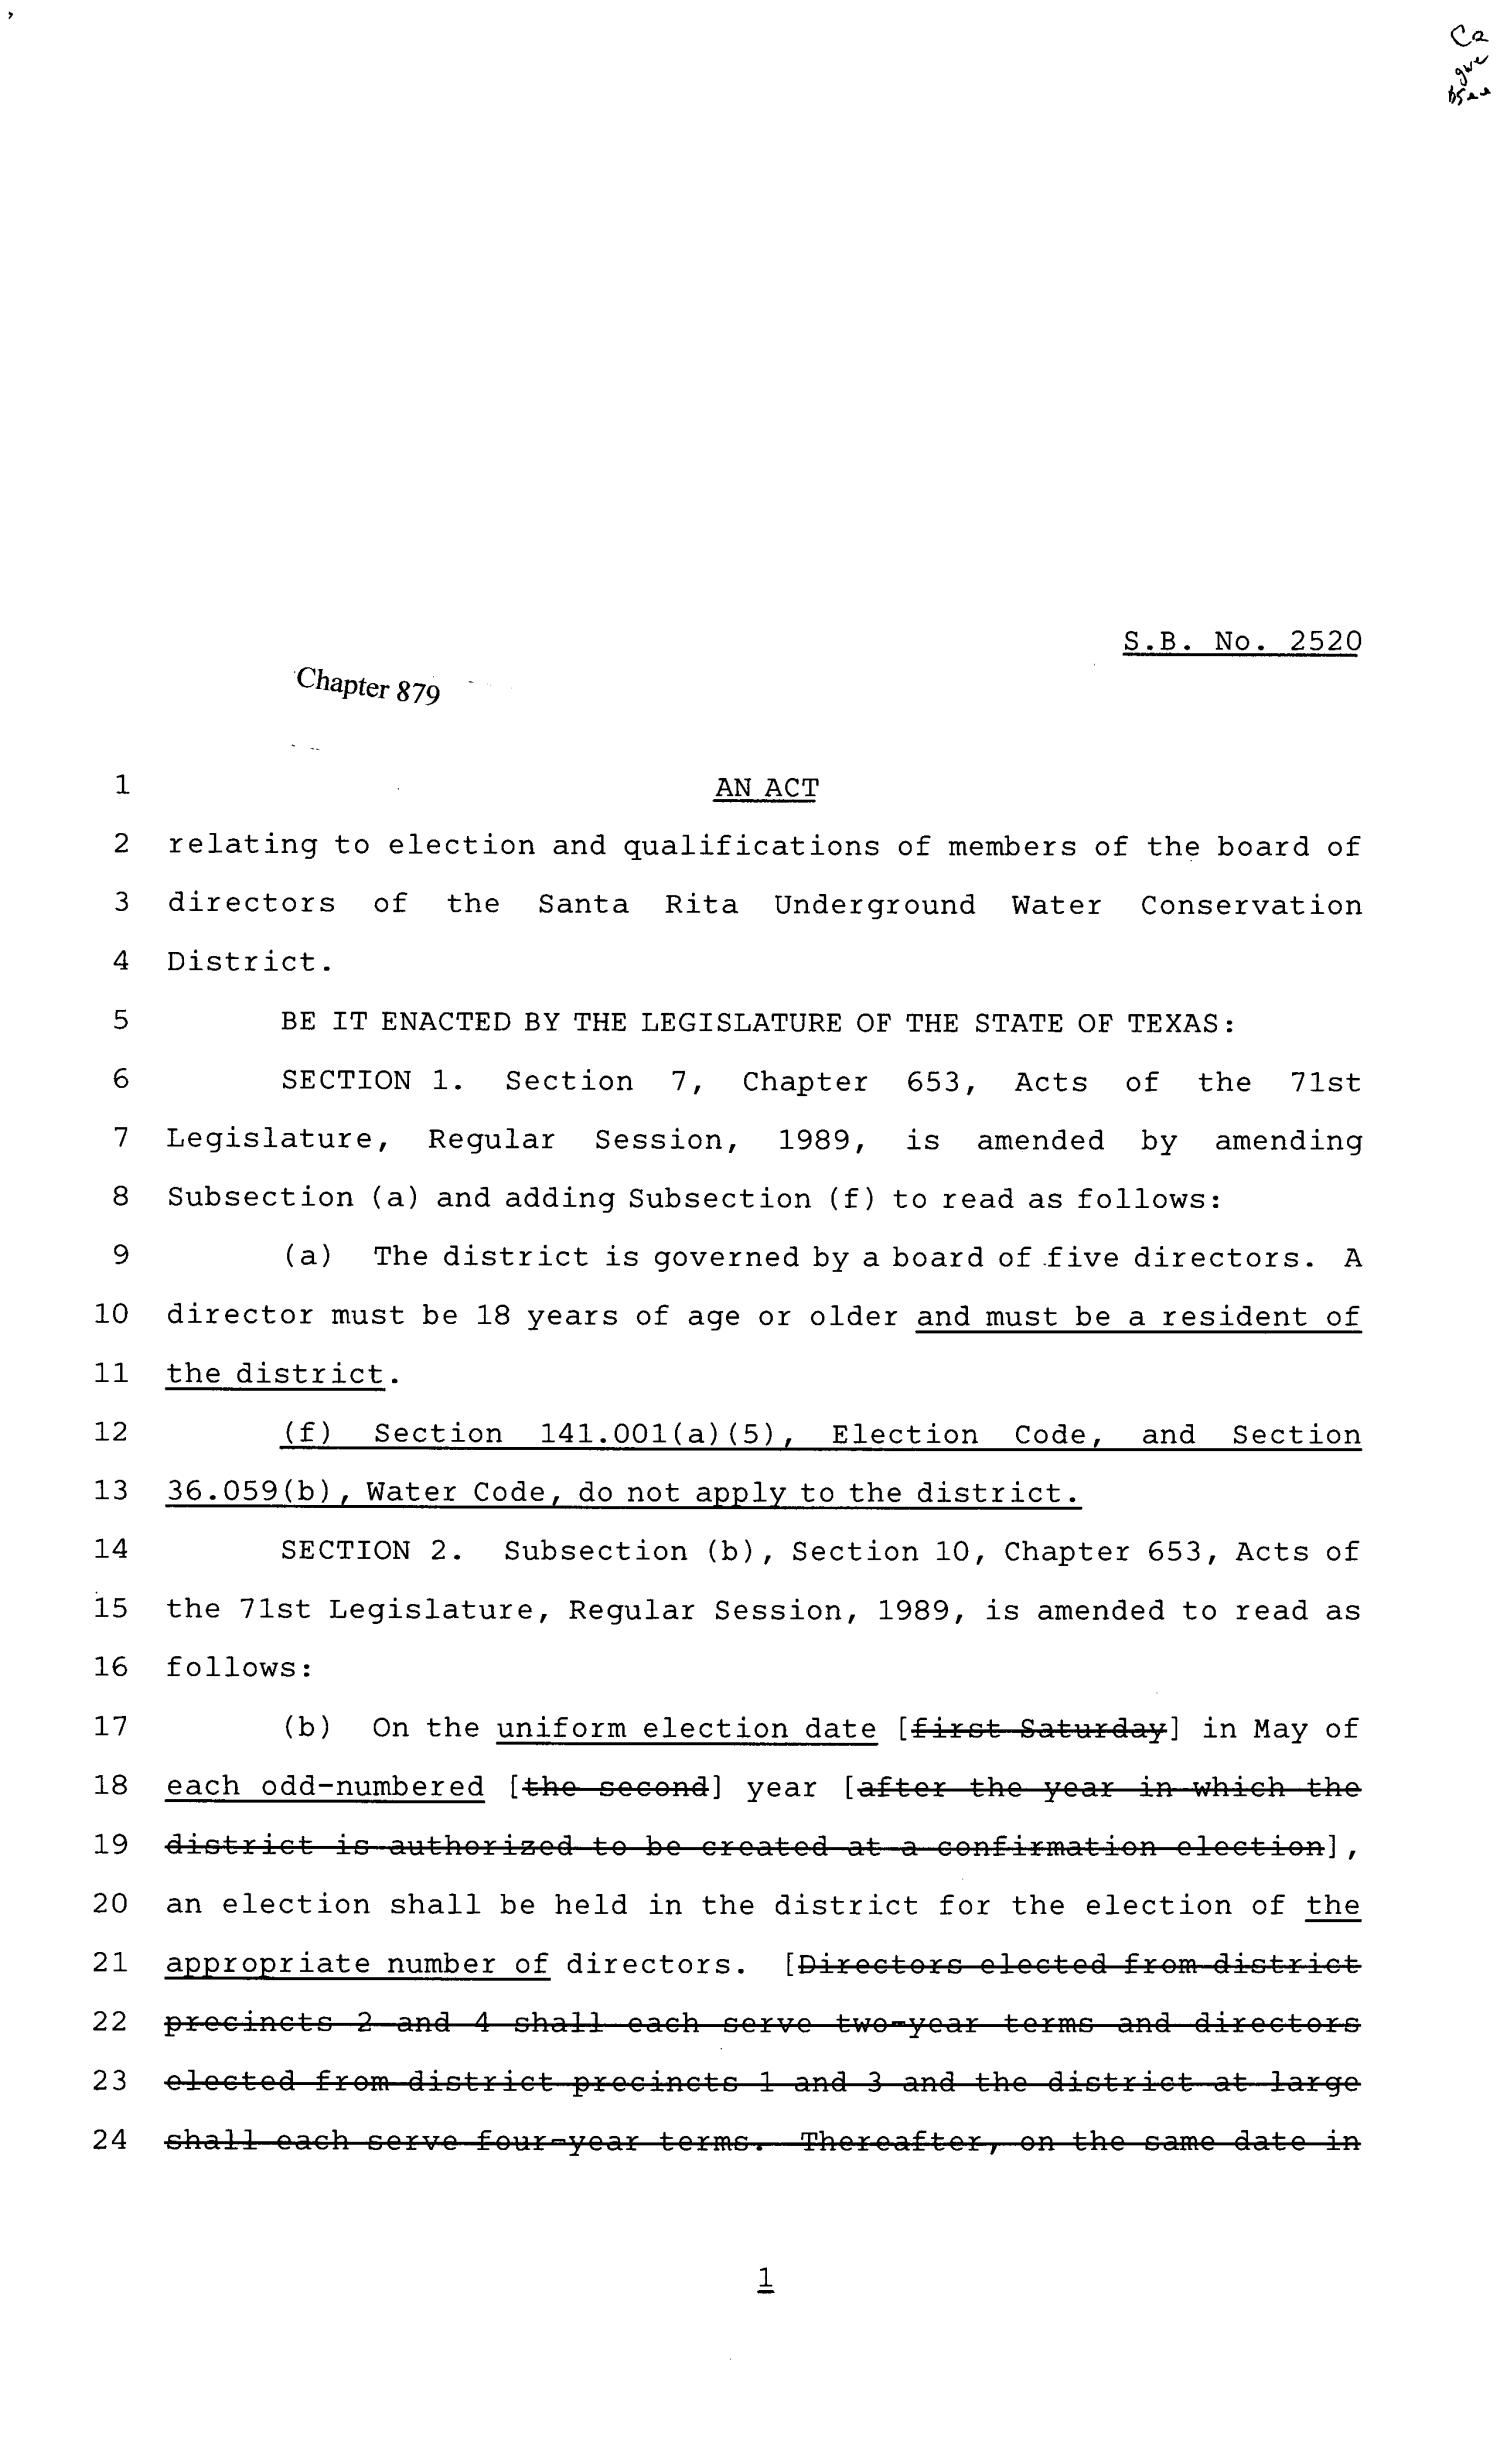 81st Texas Legislature, Senate Bill 2520, Chapter 879
                                                
                                                    [Sequence #]: 1 of 3
                                                